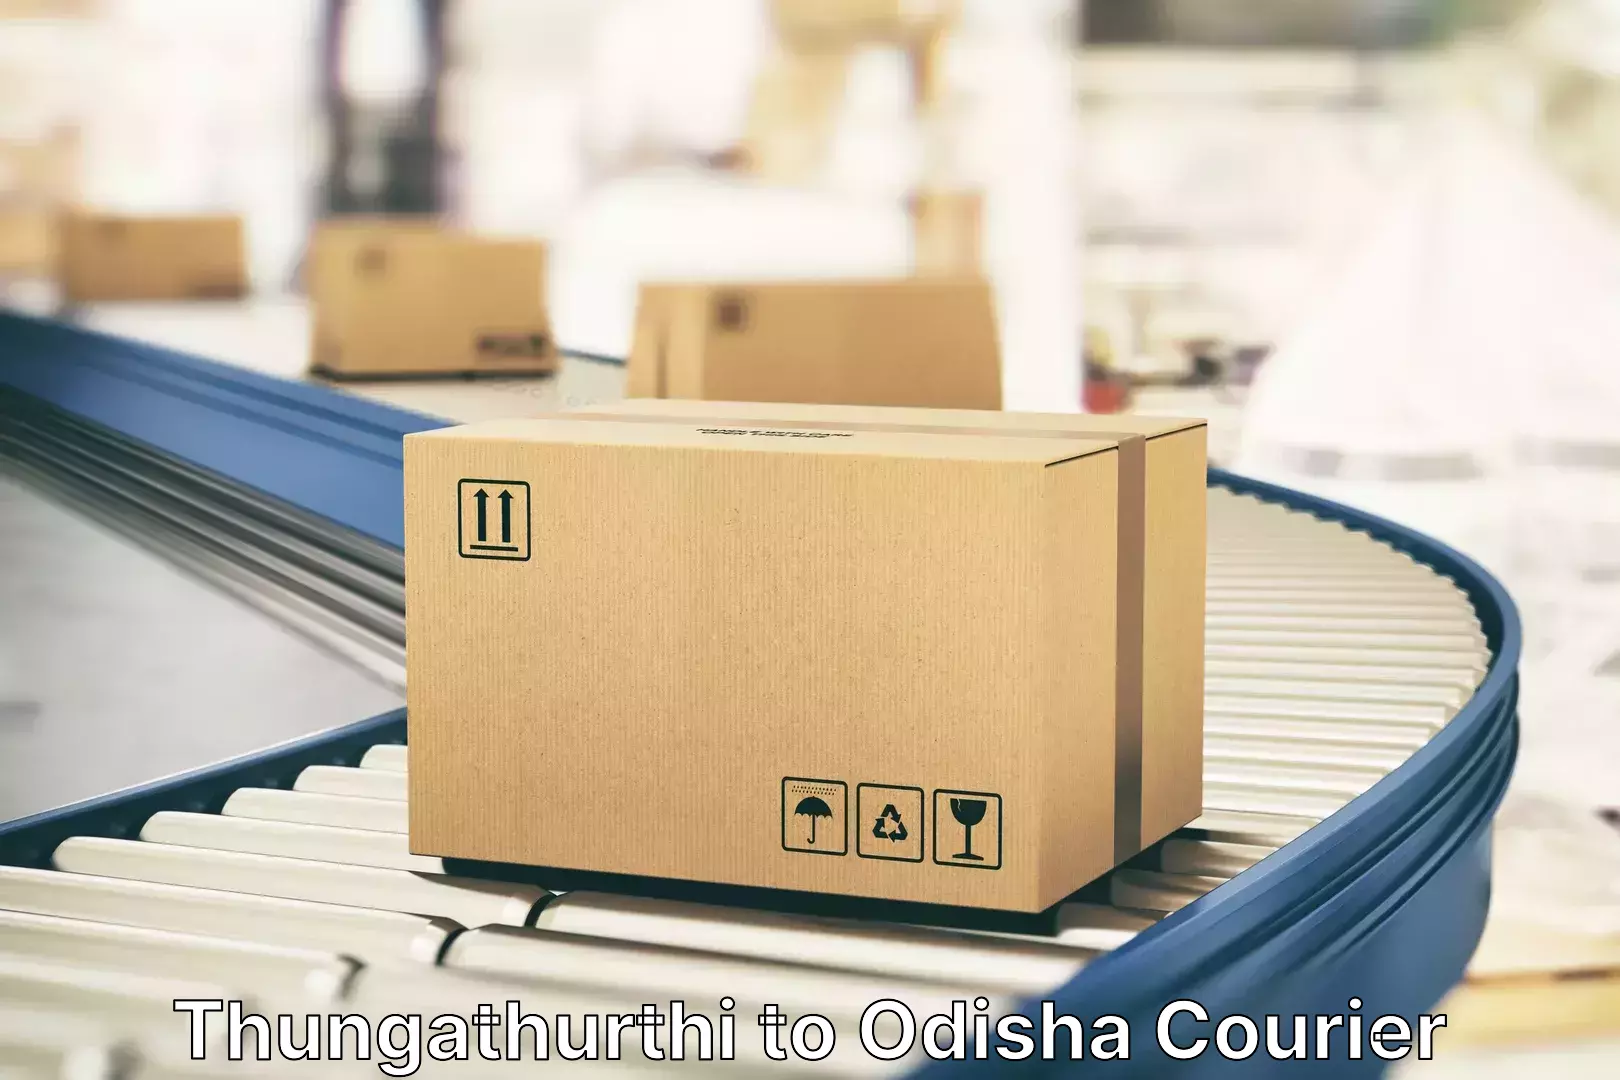 Luggage courier rates calculator Thungathurthi to Odisha